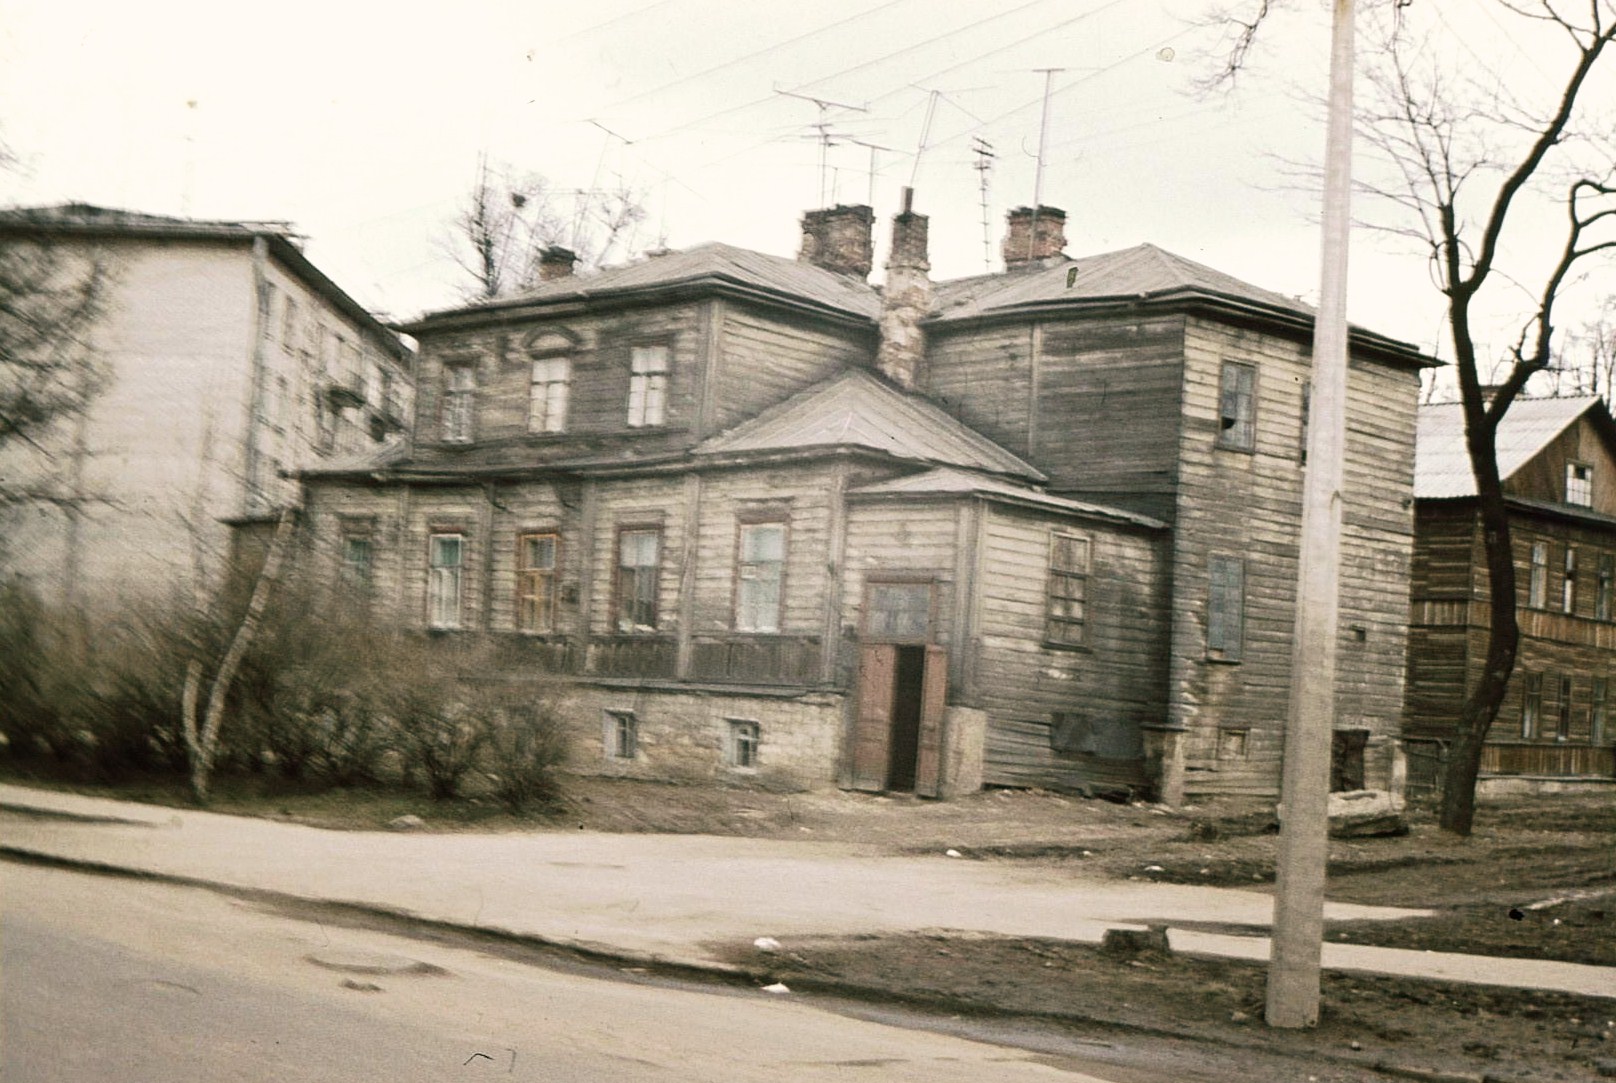 Дом № 31 на Багговутовской (Карла Маркса) улице в Гатчине,
где в 1895 – 1896 годах жила Александра Павловна Кошкуль.
Фото автора, 1973 год